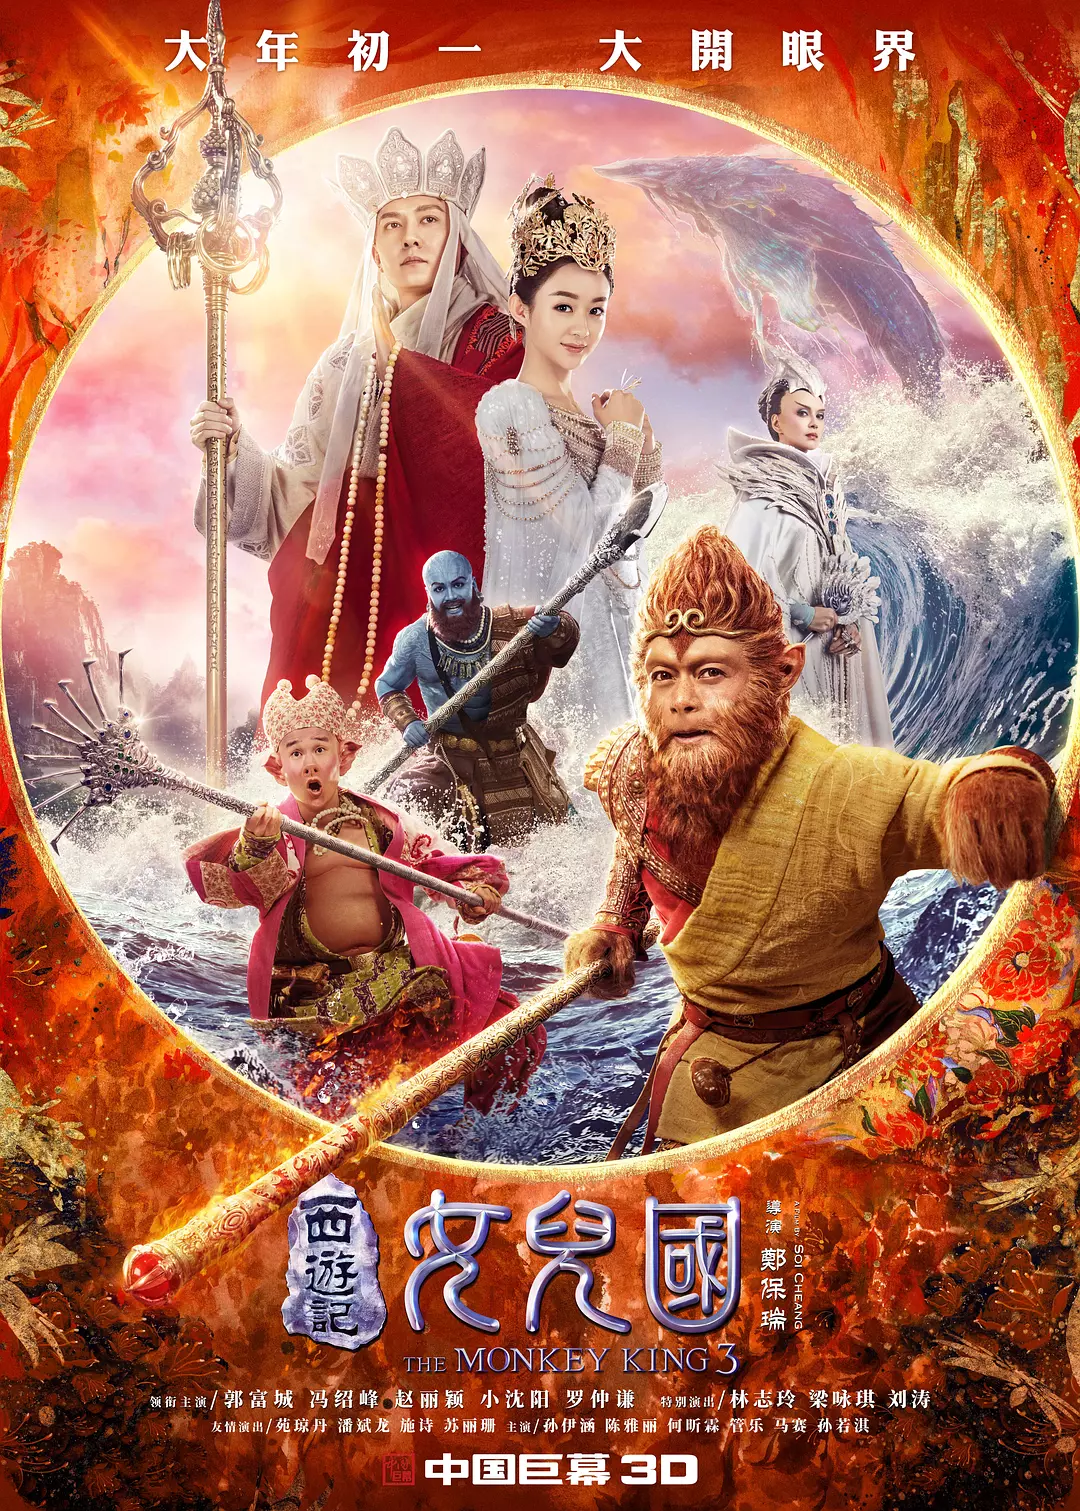 西游记女儿国 The Monkey King 3: Kingdom of Women (2018)[大陆][奇幻][无水印][BT下载][HD4K/1080P-MP4/7.6GB][国语中字]